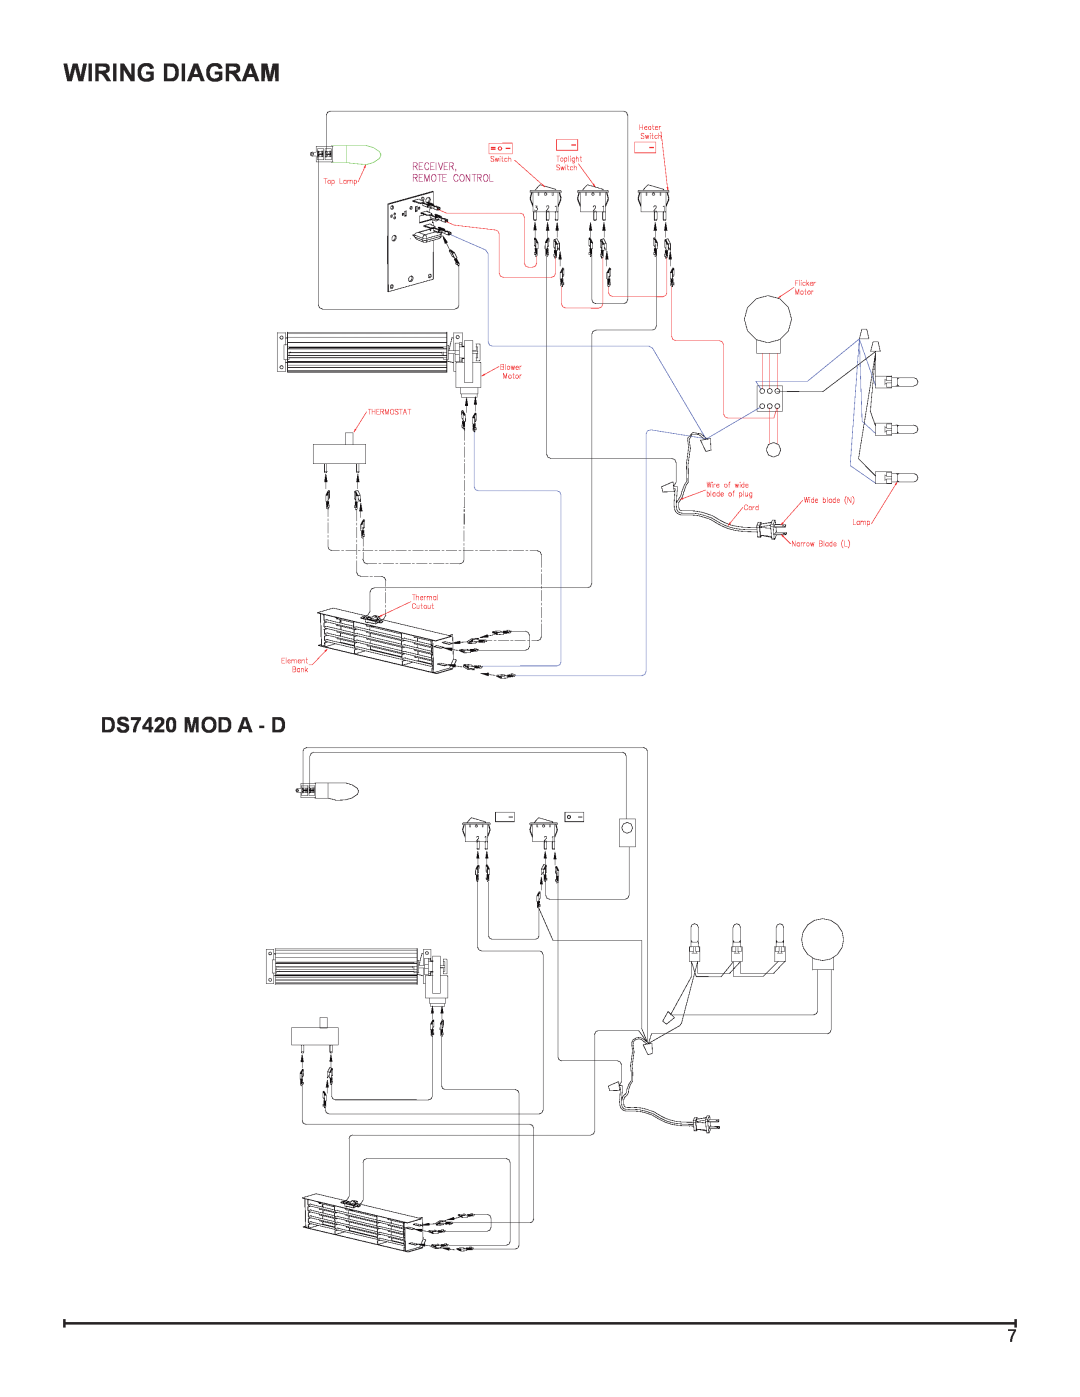 Dimplex DS7425DLX service manual Wiring Diagram, DS7420 MOD A - D 